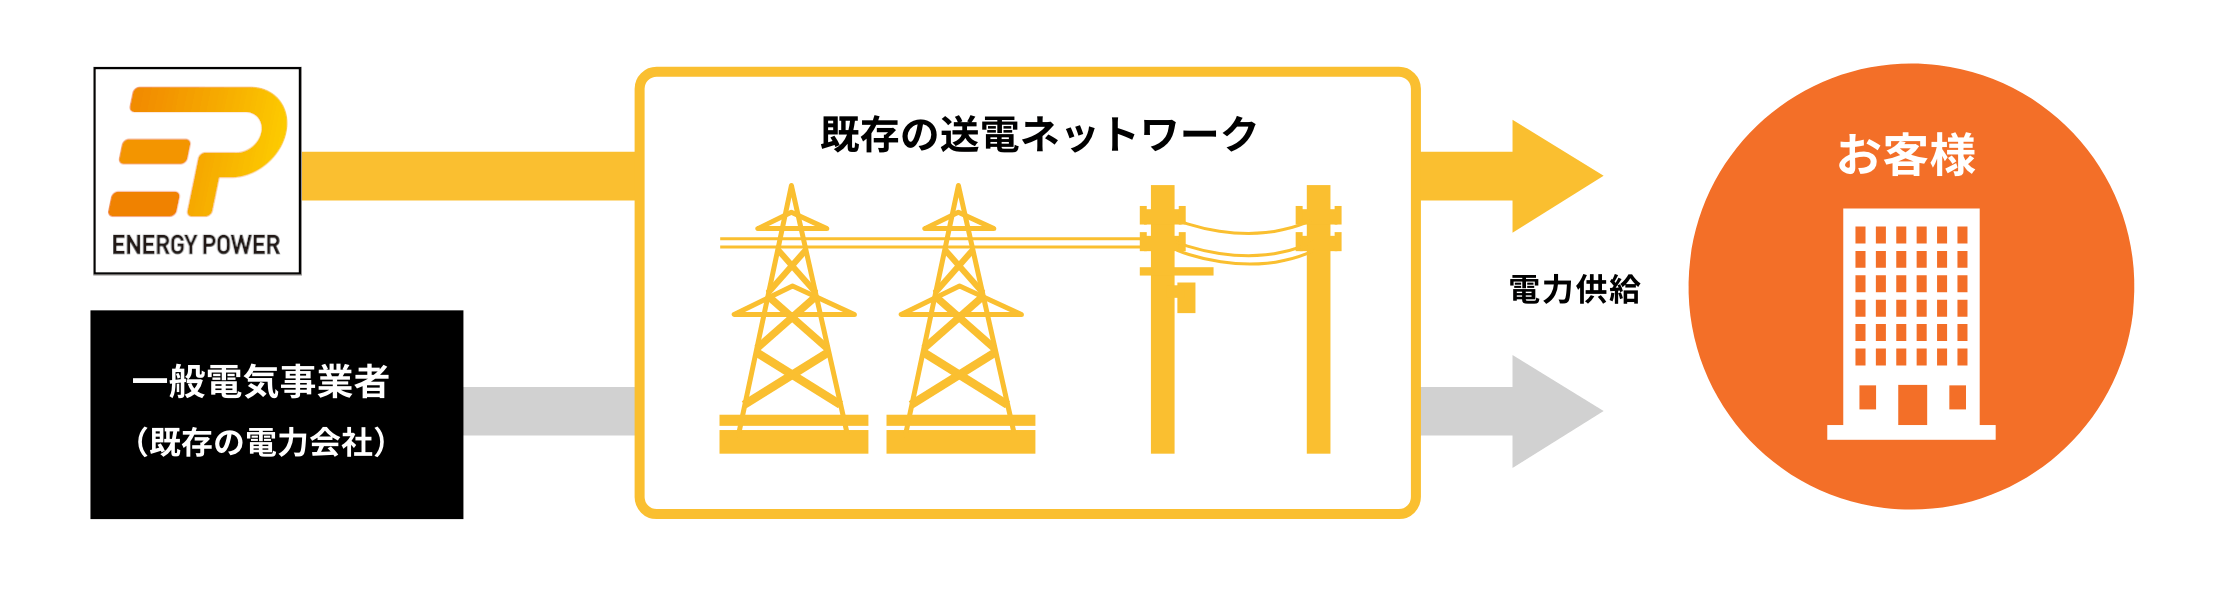 エネルギーパワーからお客様への電力供給と、一般電気事業者（既存の電力会社）からお客様への電力供給はいずれも既存の送電ネットワークを利用します